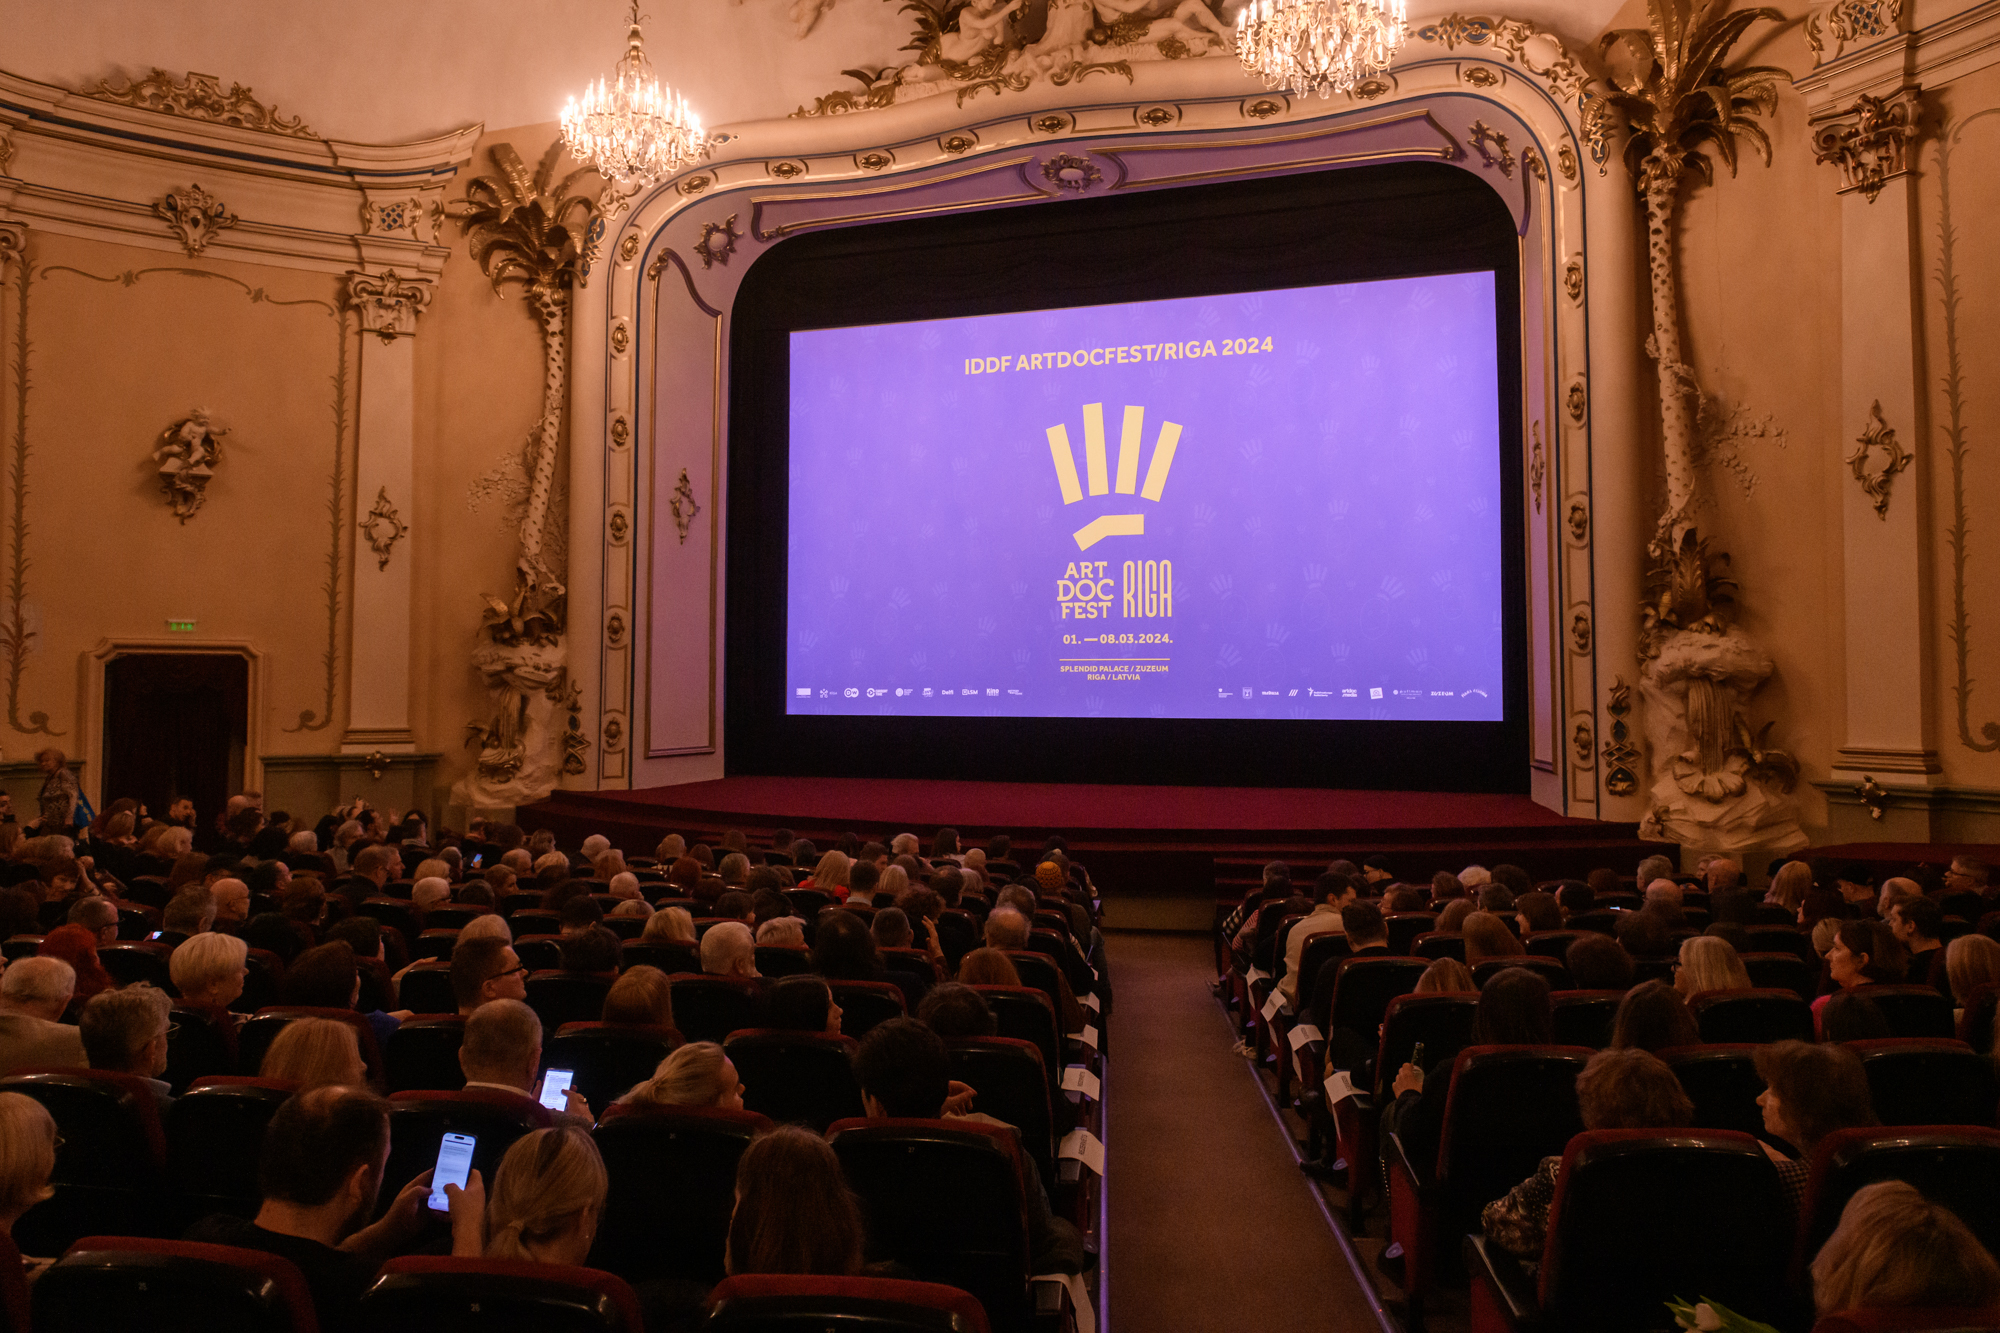 Atklāts kinofestivāls "Artdocfest/Riga". 